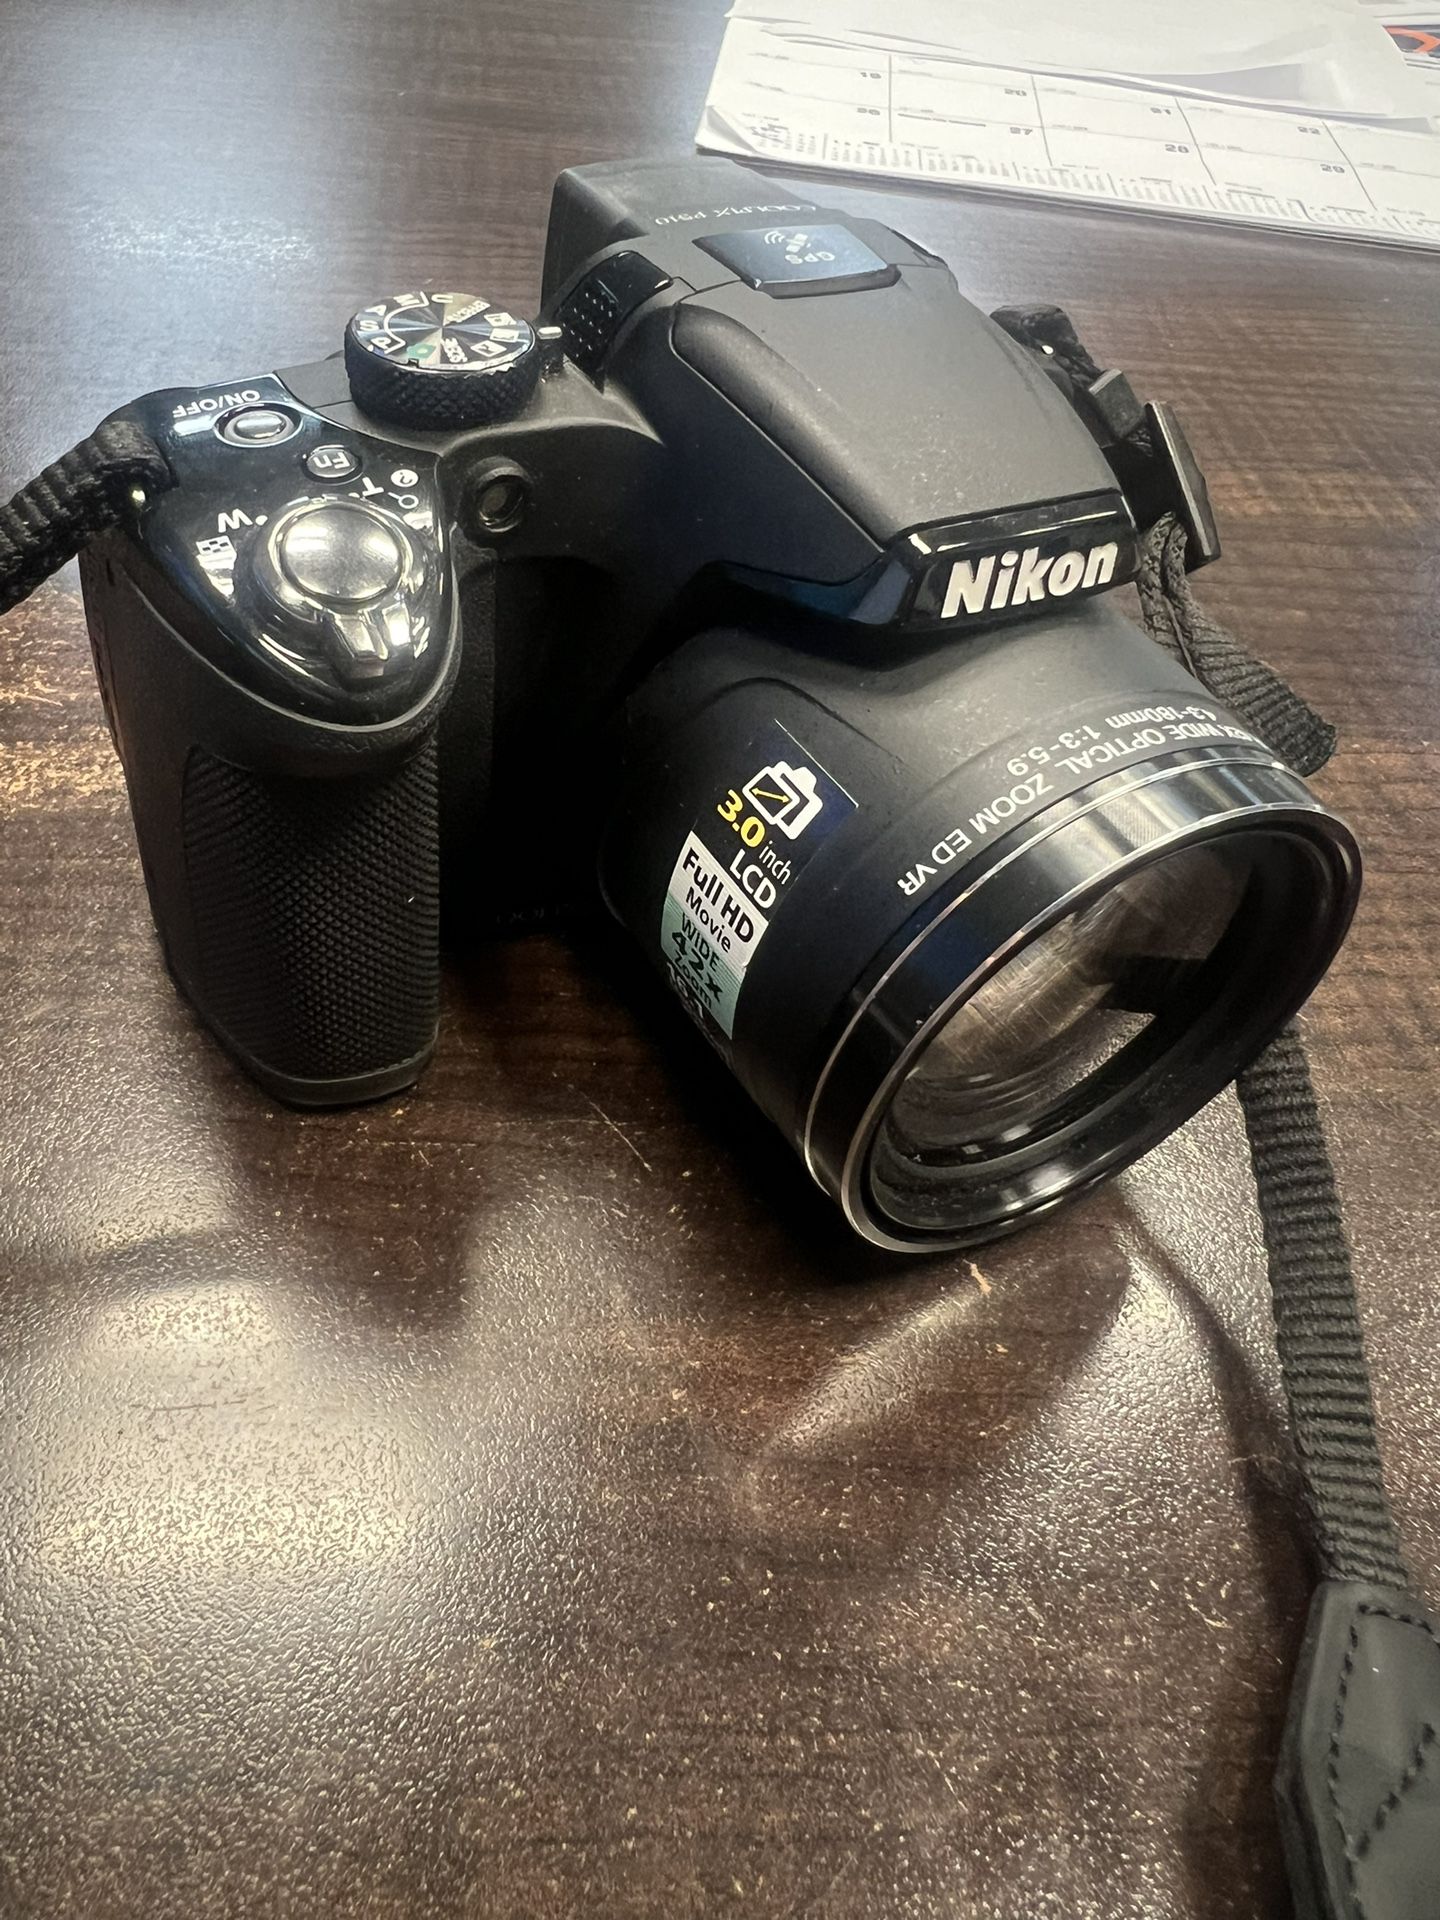 Nikon Coolpix P510 Compact Digital Camera